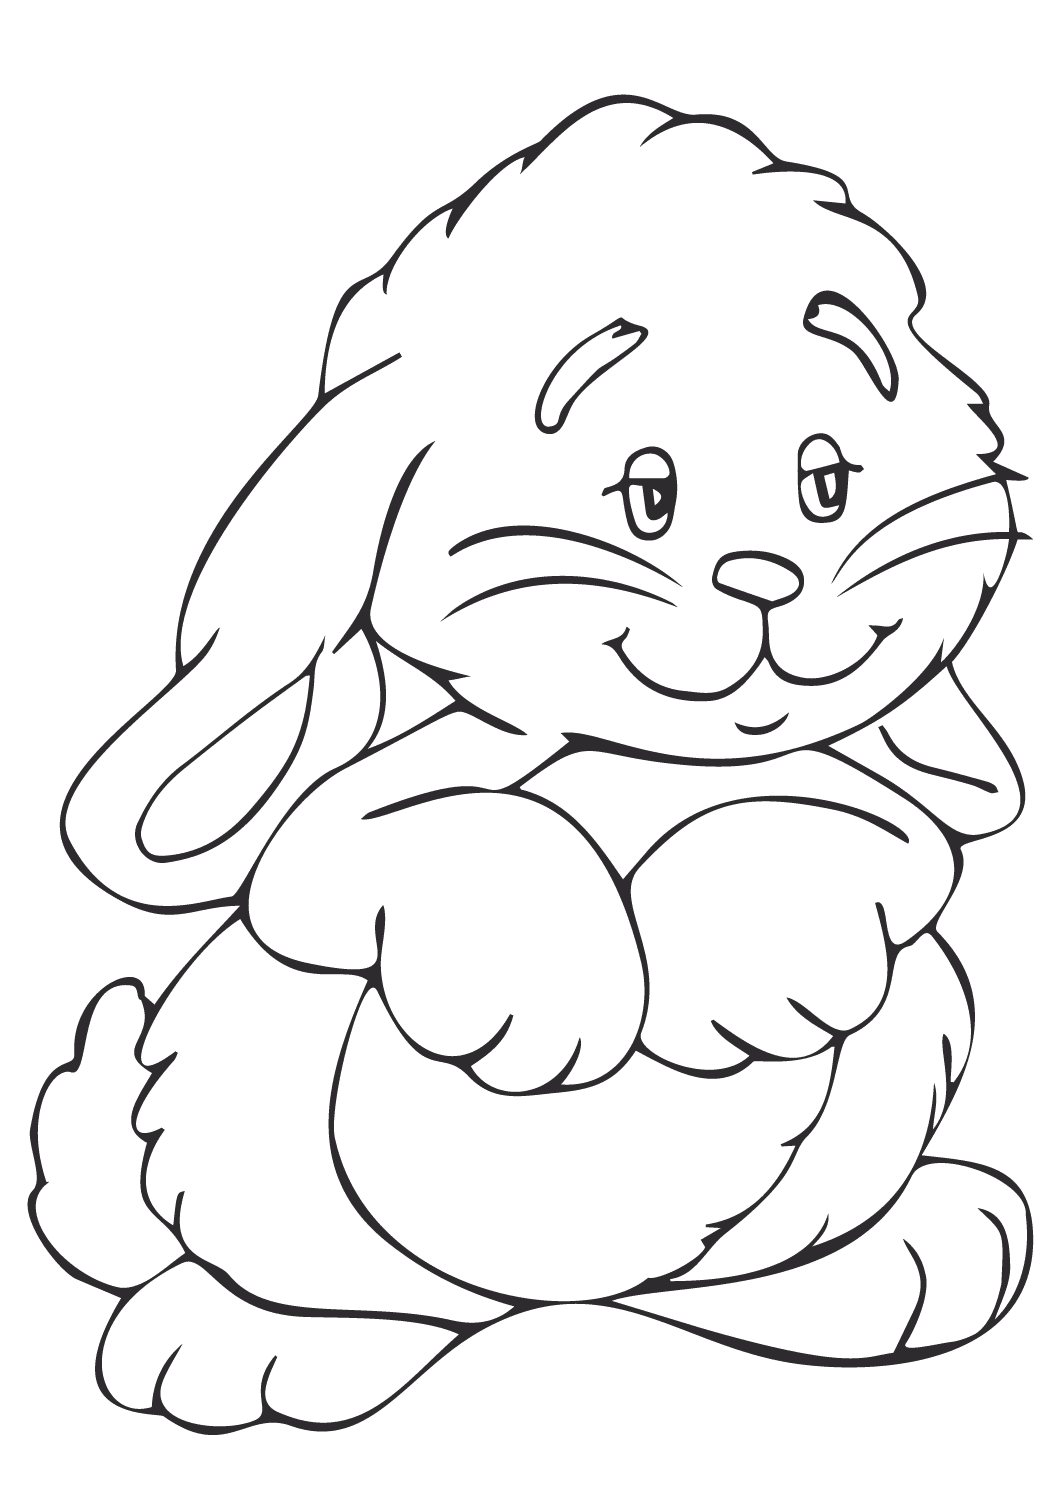 可爱的兔子用两条腿站立